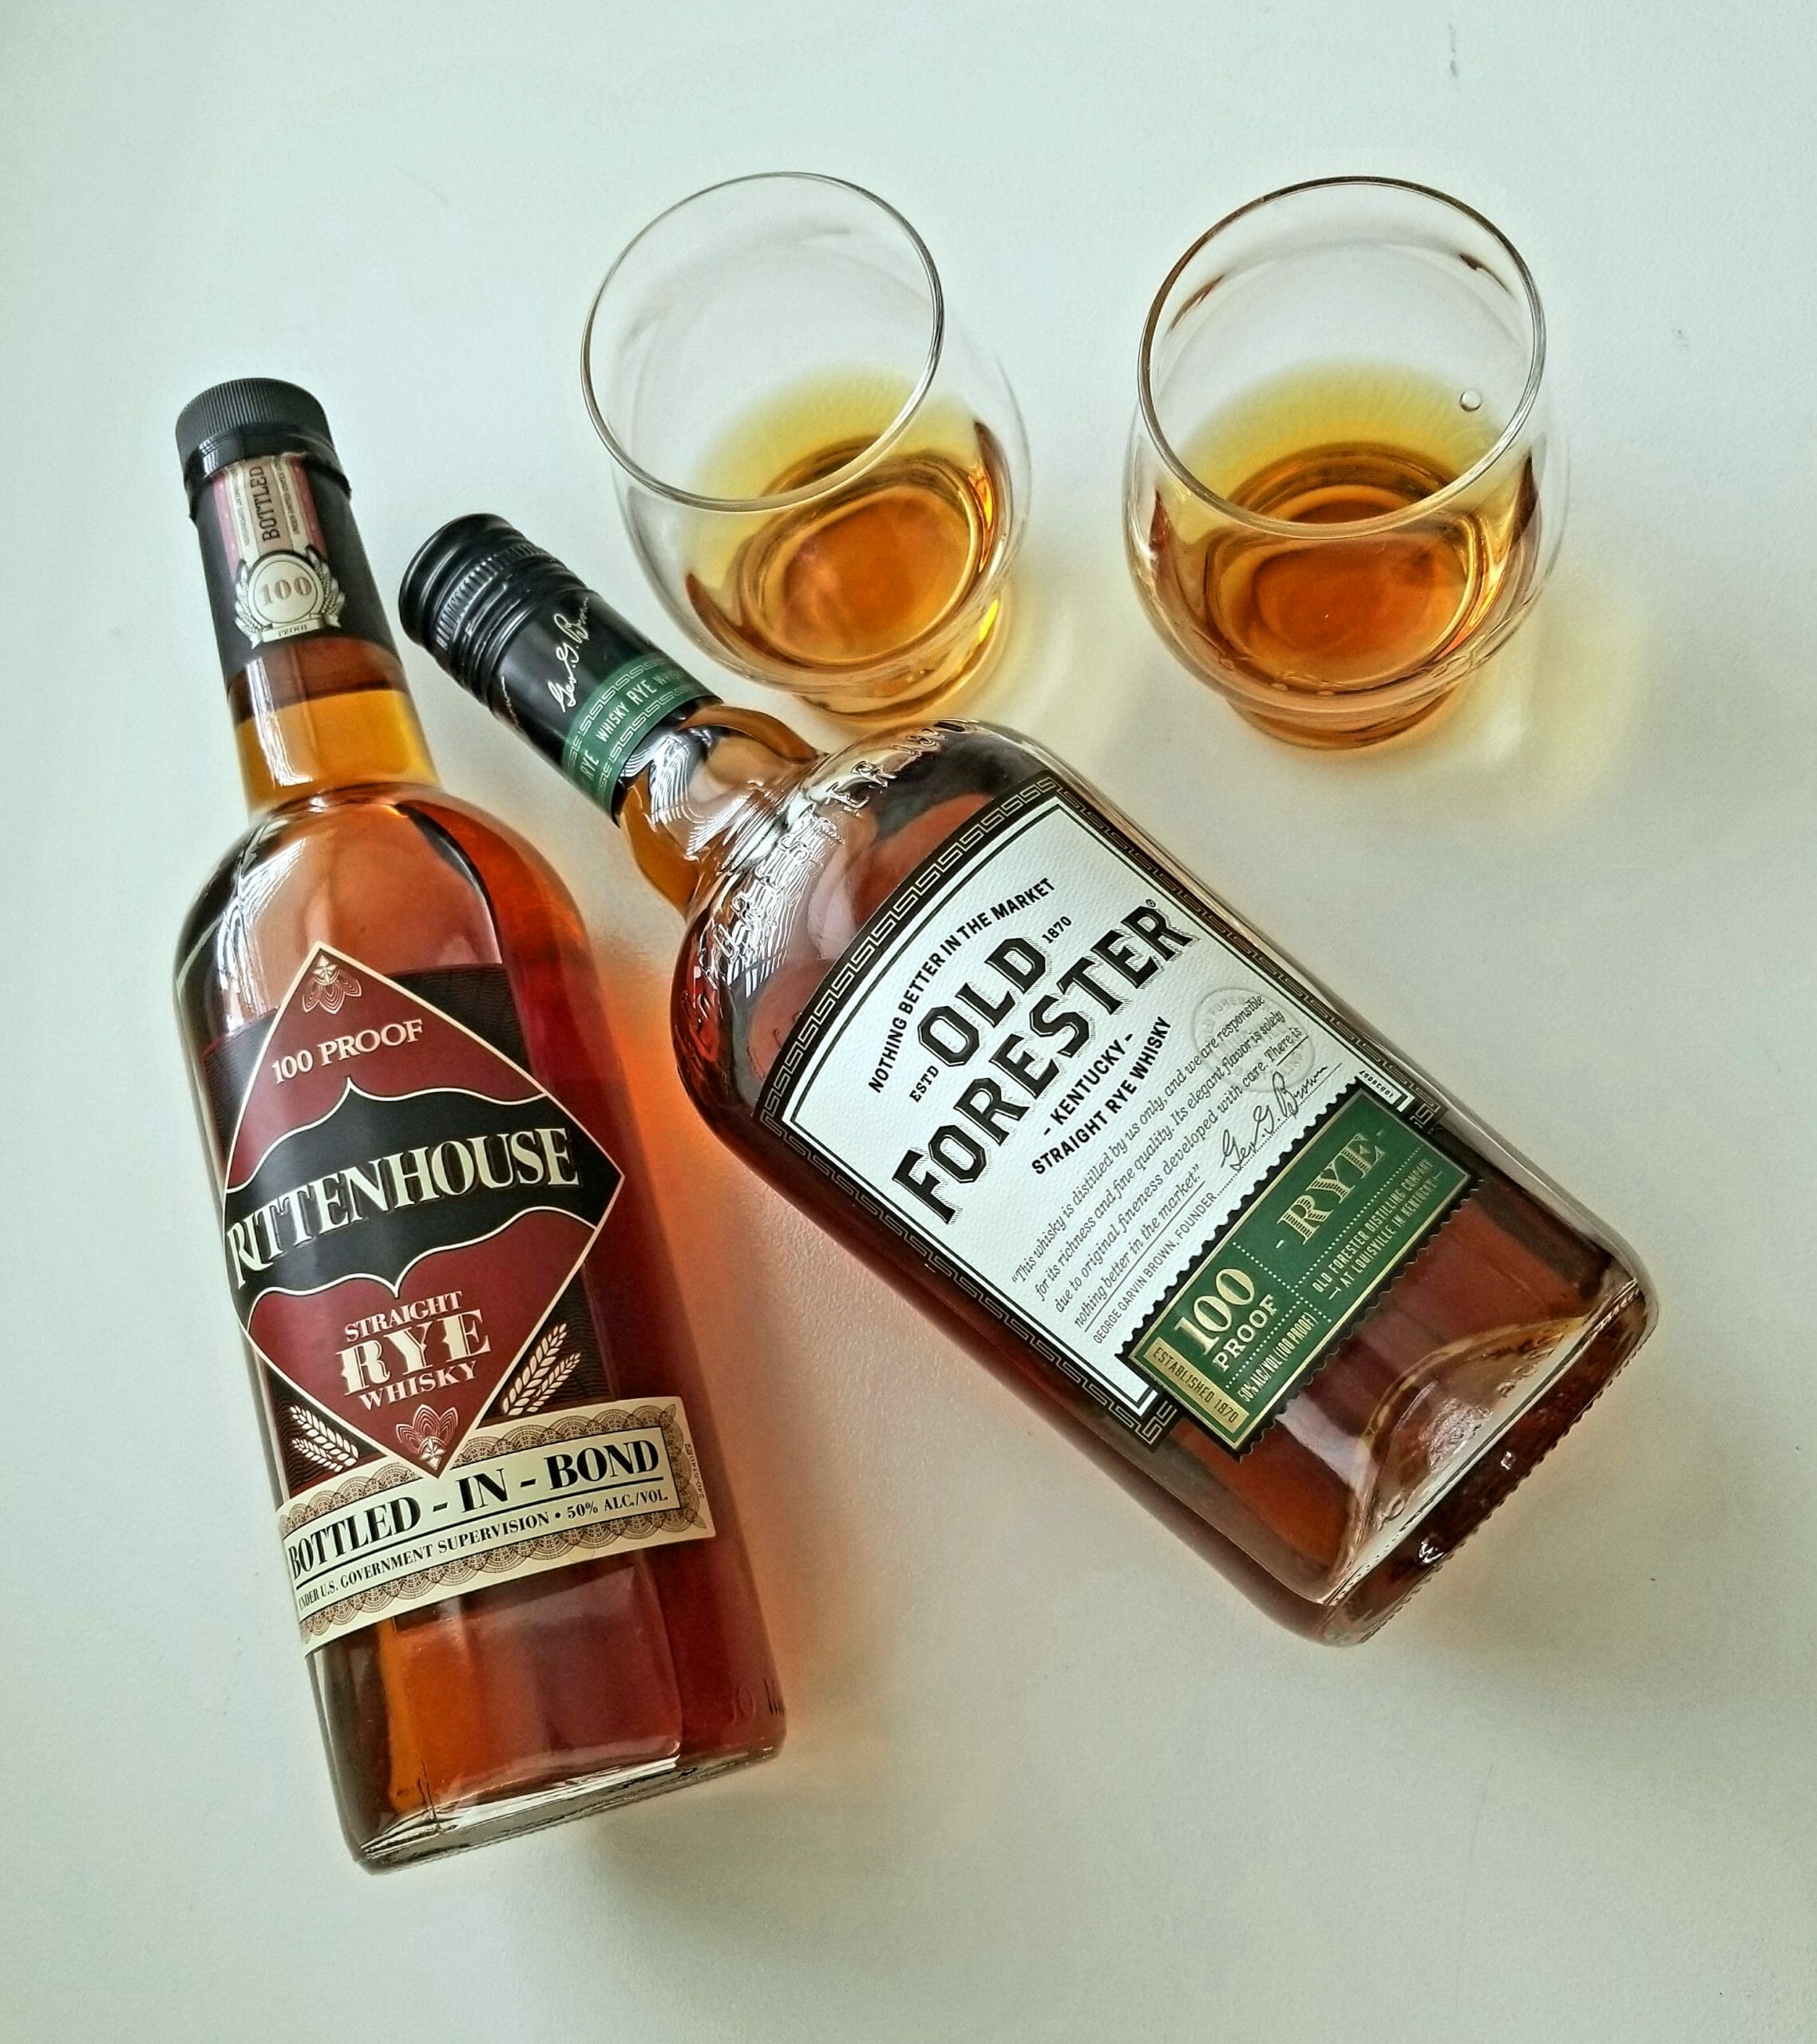 Old Forester Rye Whiskey vs. Rittenhouse Rye Whiskey